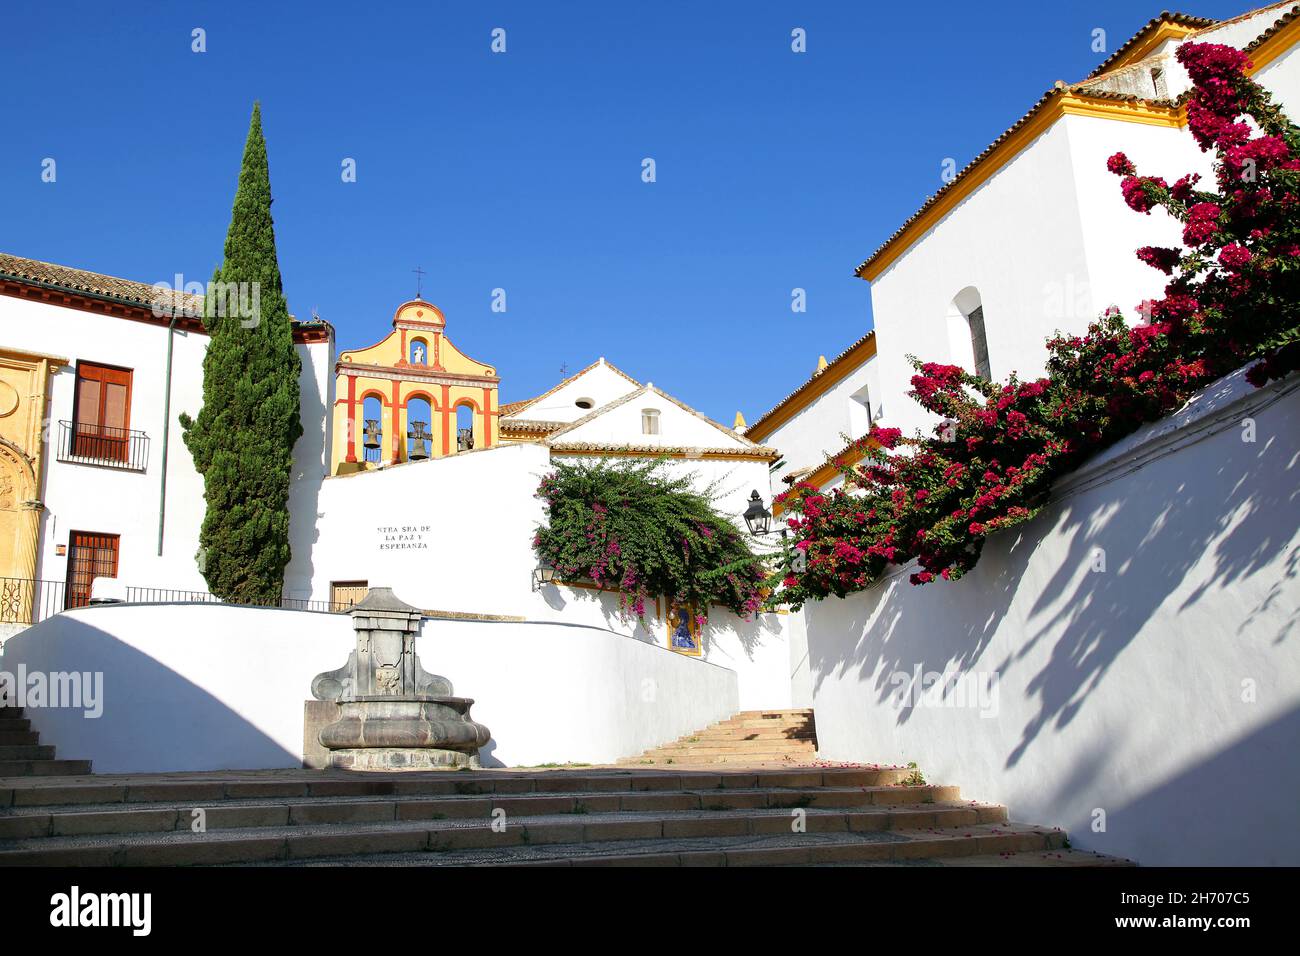 Plaza Nuestra Señora de la Paz y Esperanza en Córdoba España.Plaza junto al Cristo de las Linternas,llena de flores y escalones que conducen a la ladera de Bailio. Foto de stock